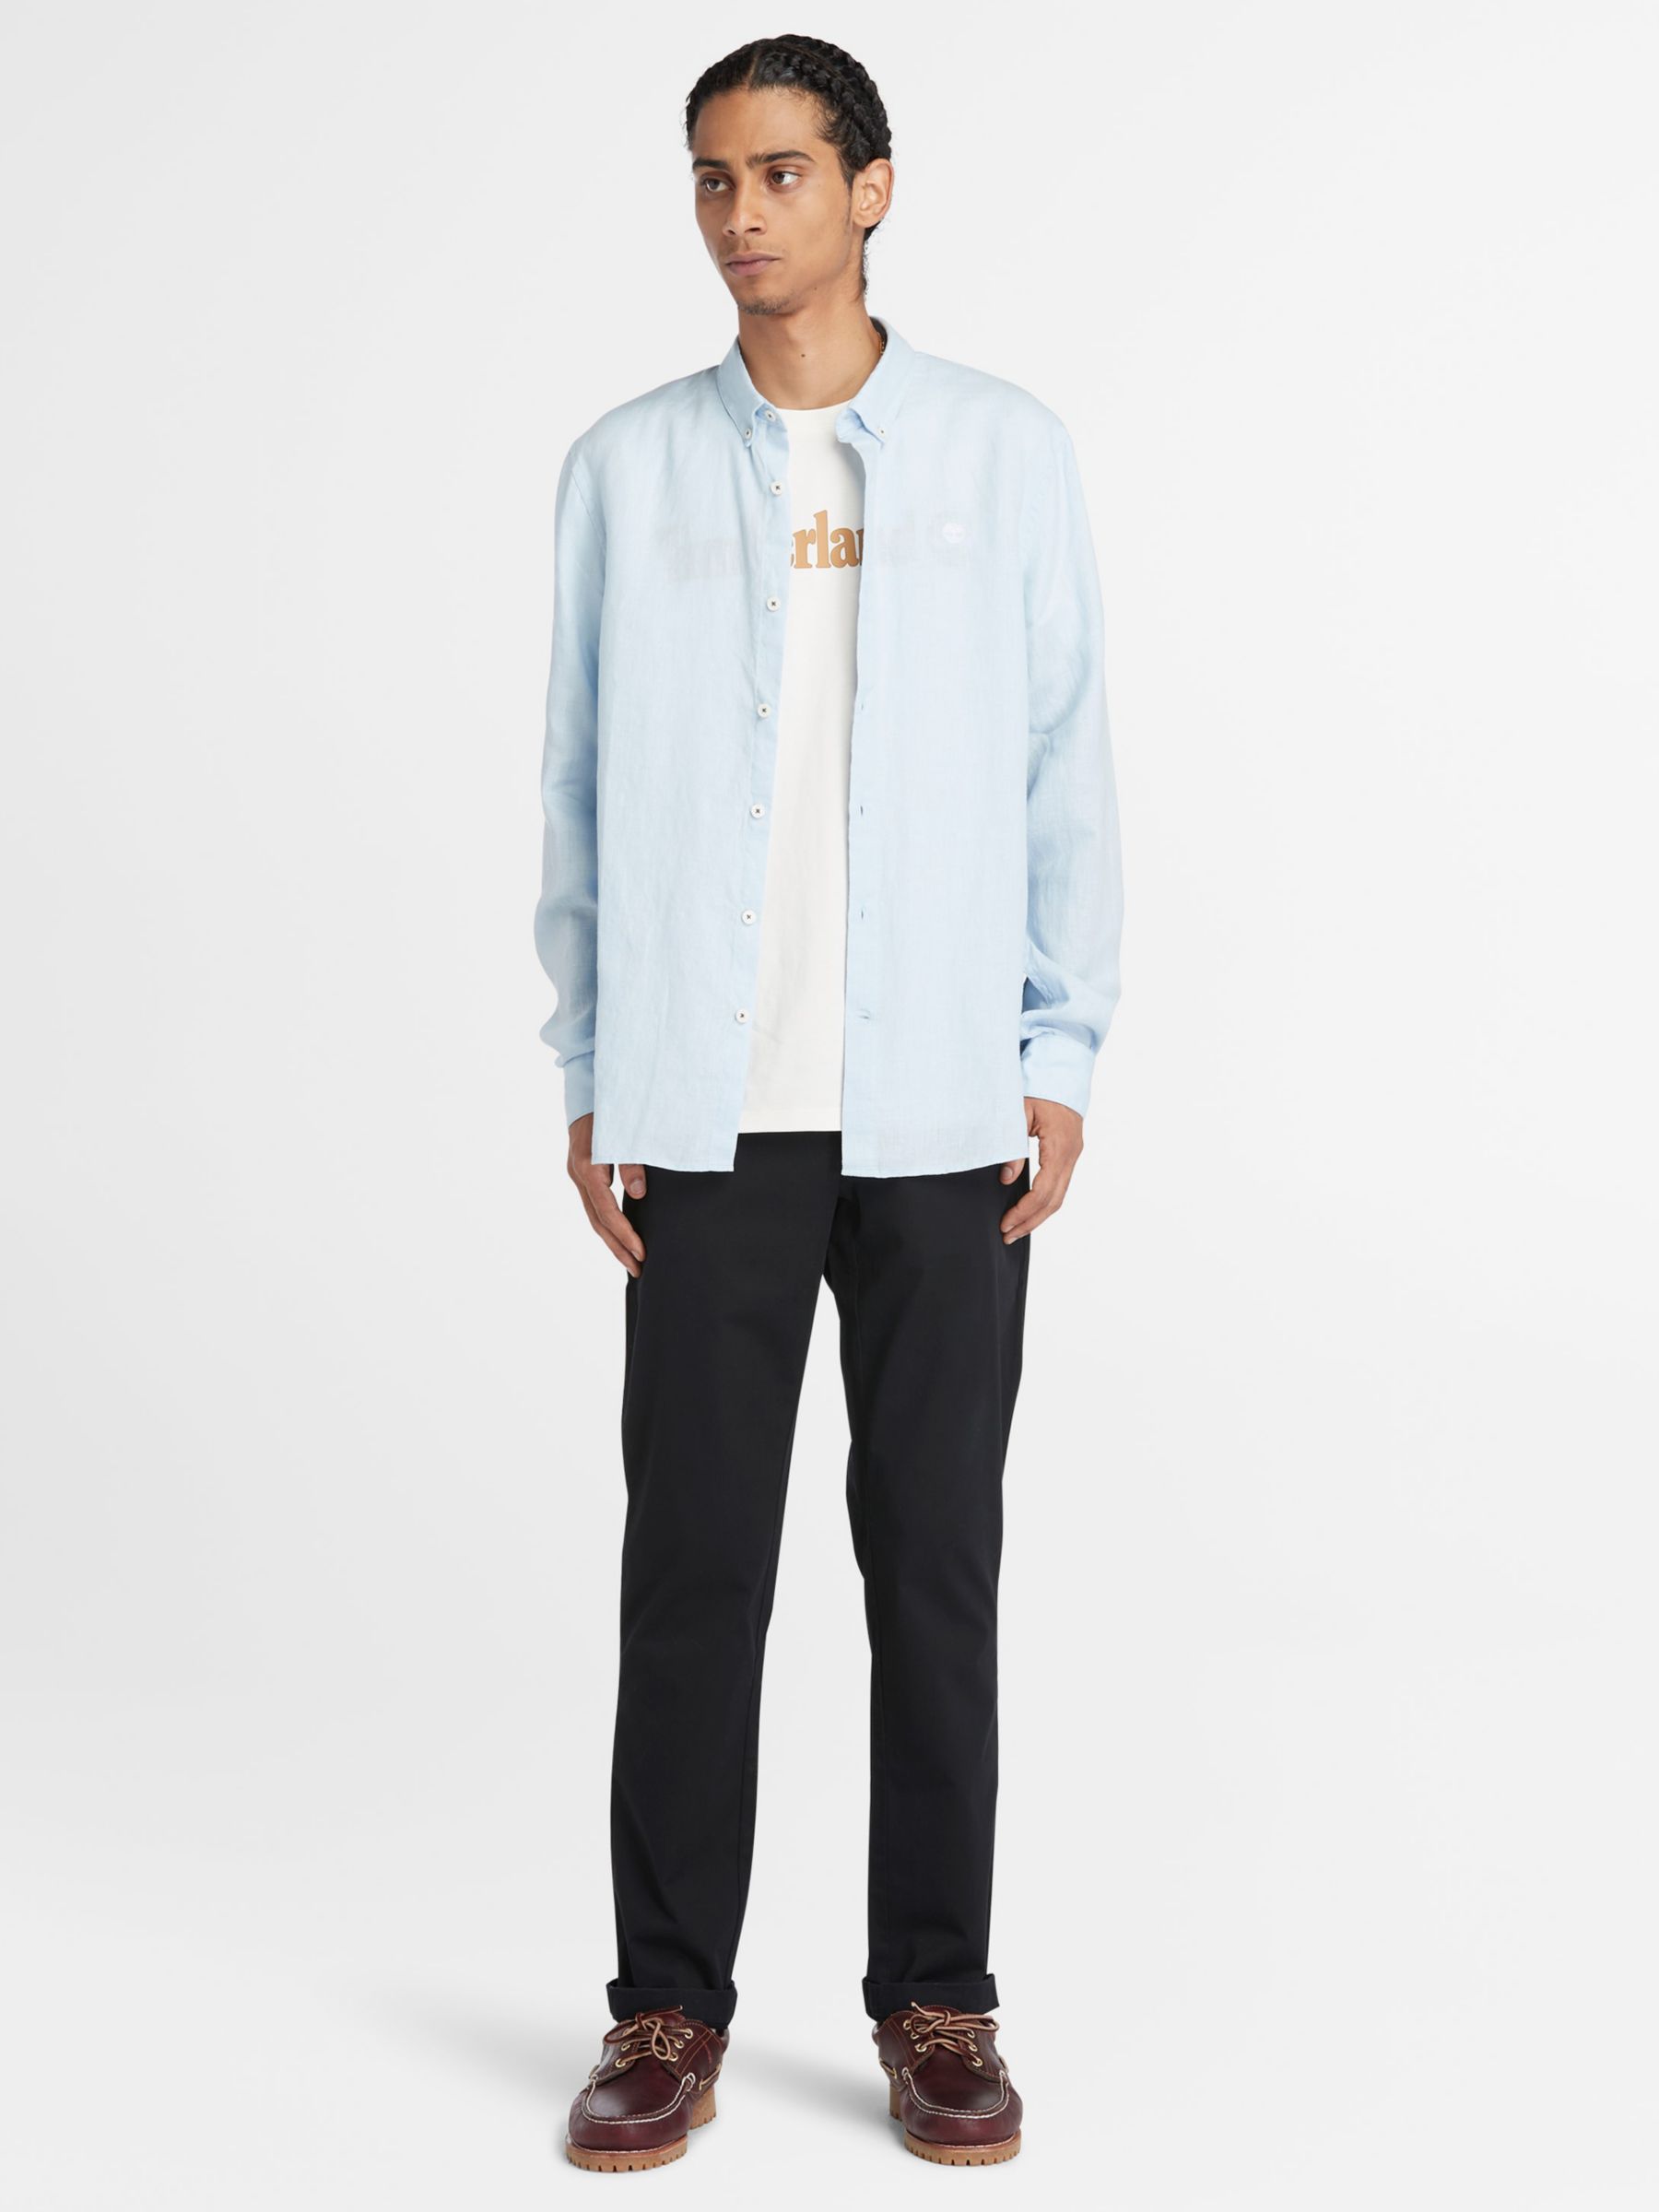 Timberland Linen Long Sleeve Slim Shirt, Blue, S